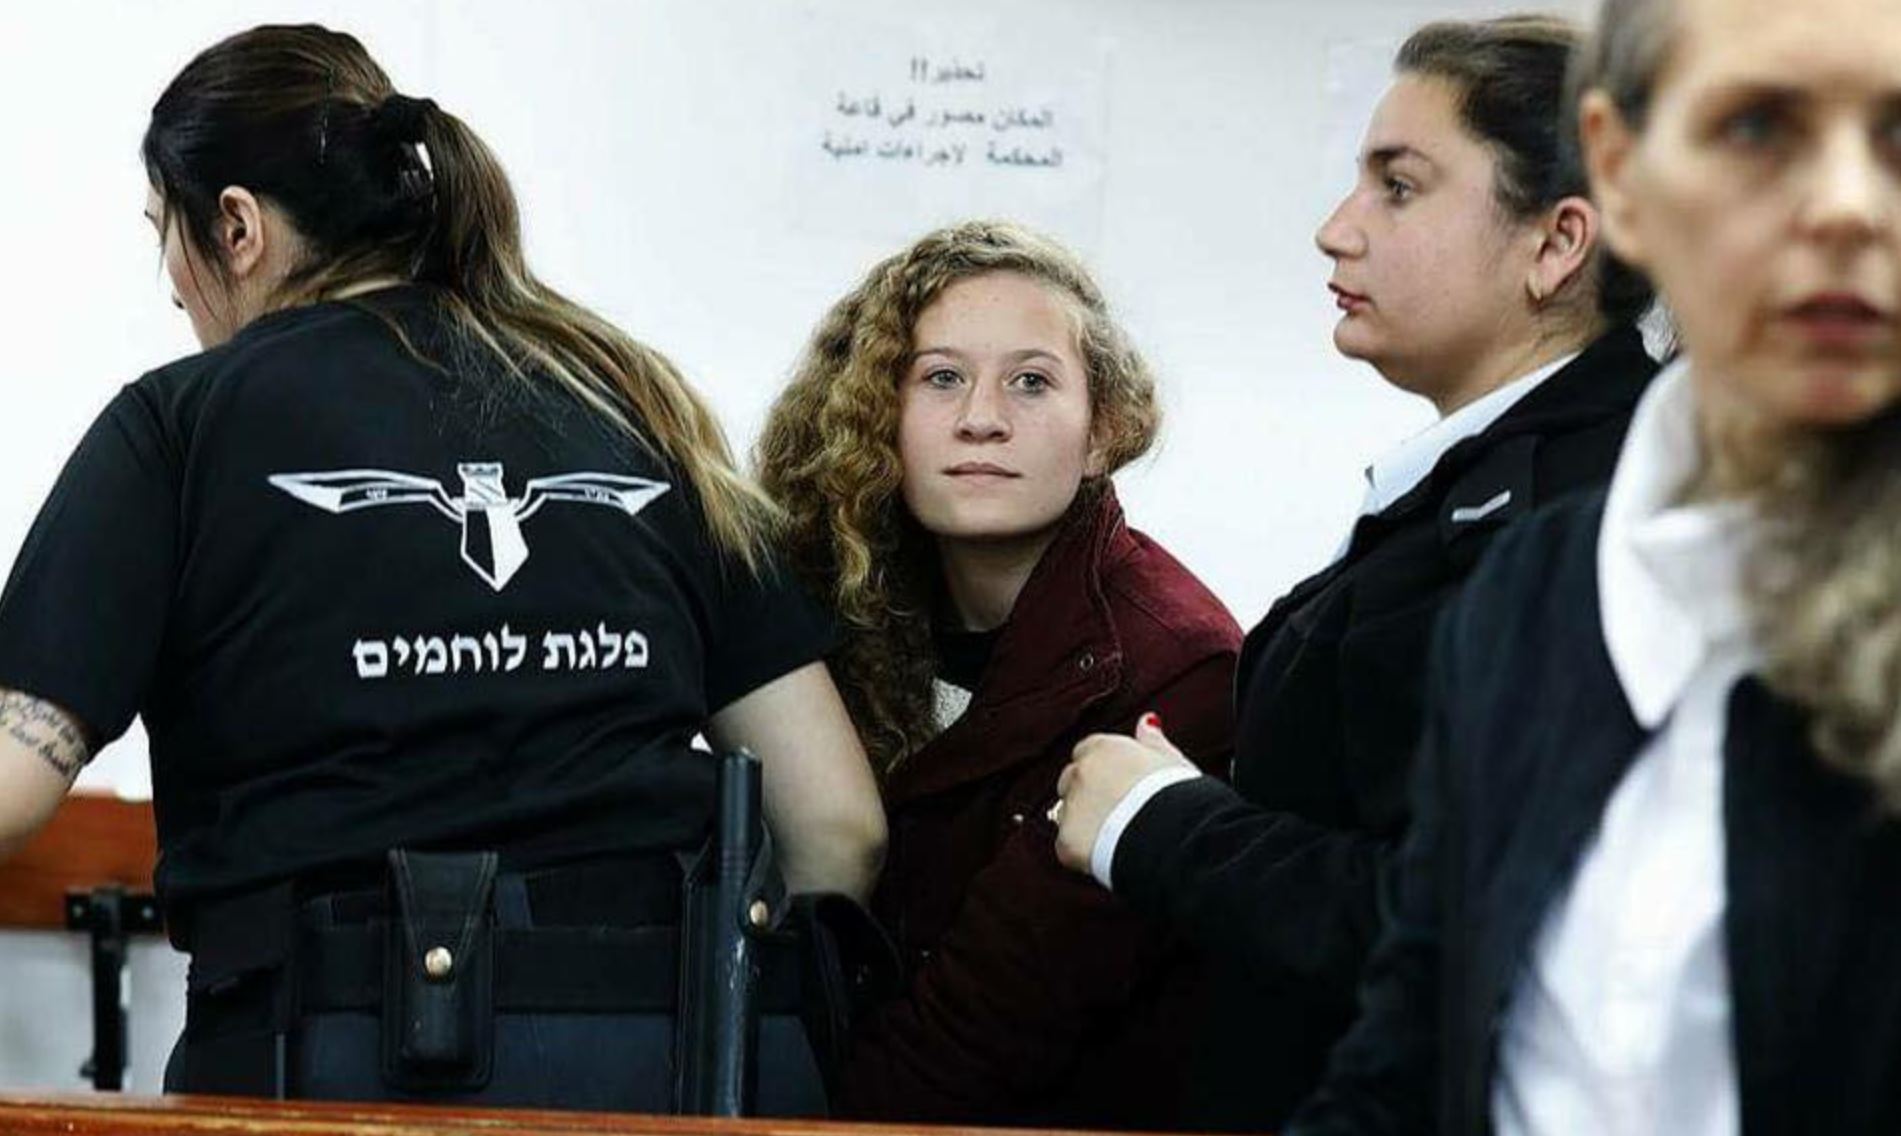 Λευτεριά στη 16χρονη Παλαιστίνια αγωνίστρια Άχεντ Ταμίμι - Όταν η αδικία γίνεται νόμος, τότε η αντίσταση είναι καθήκον